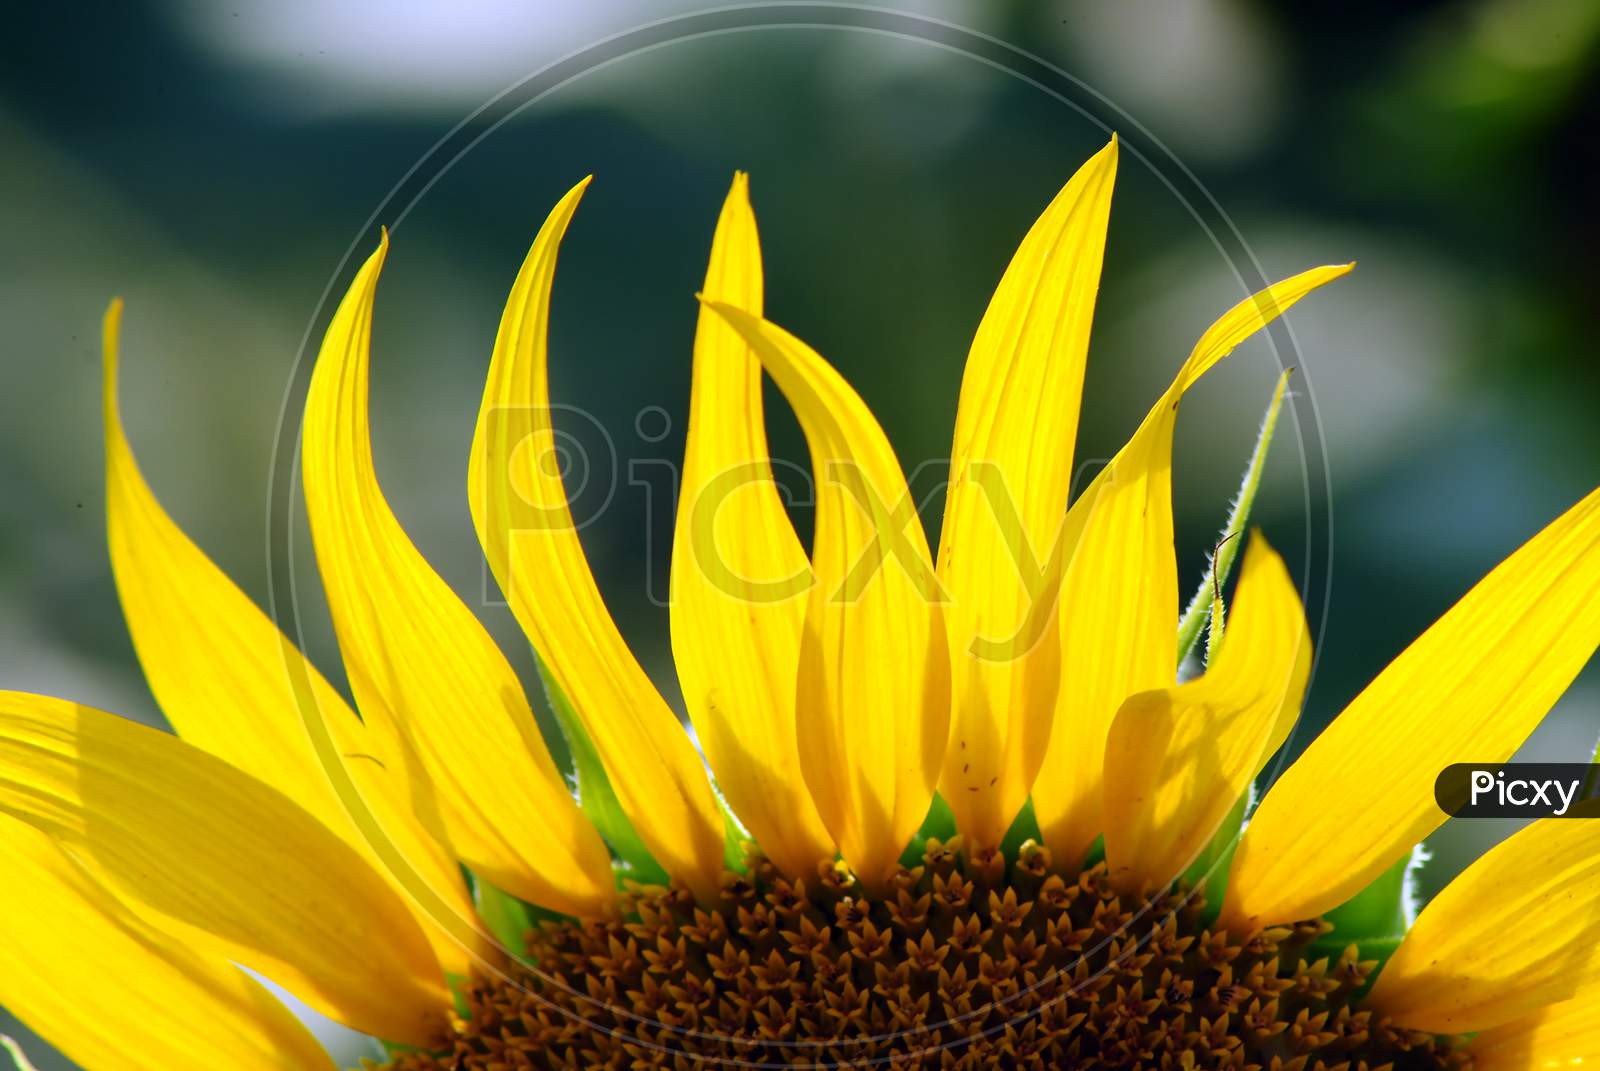 The part of a Sun flower.